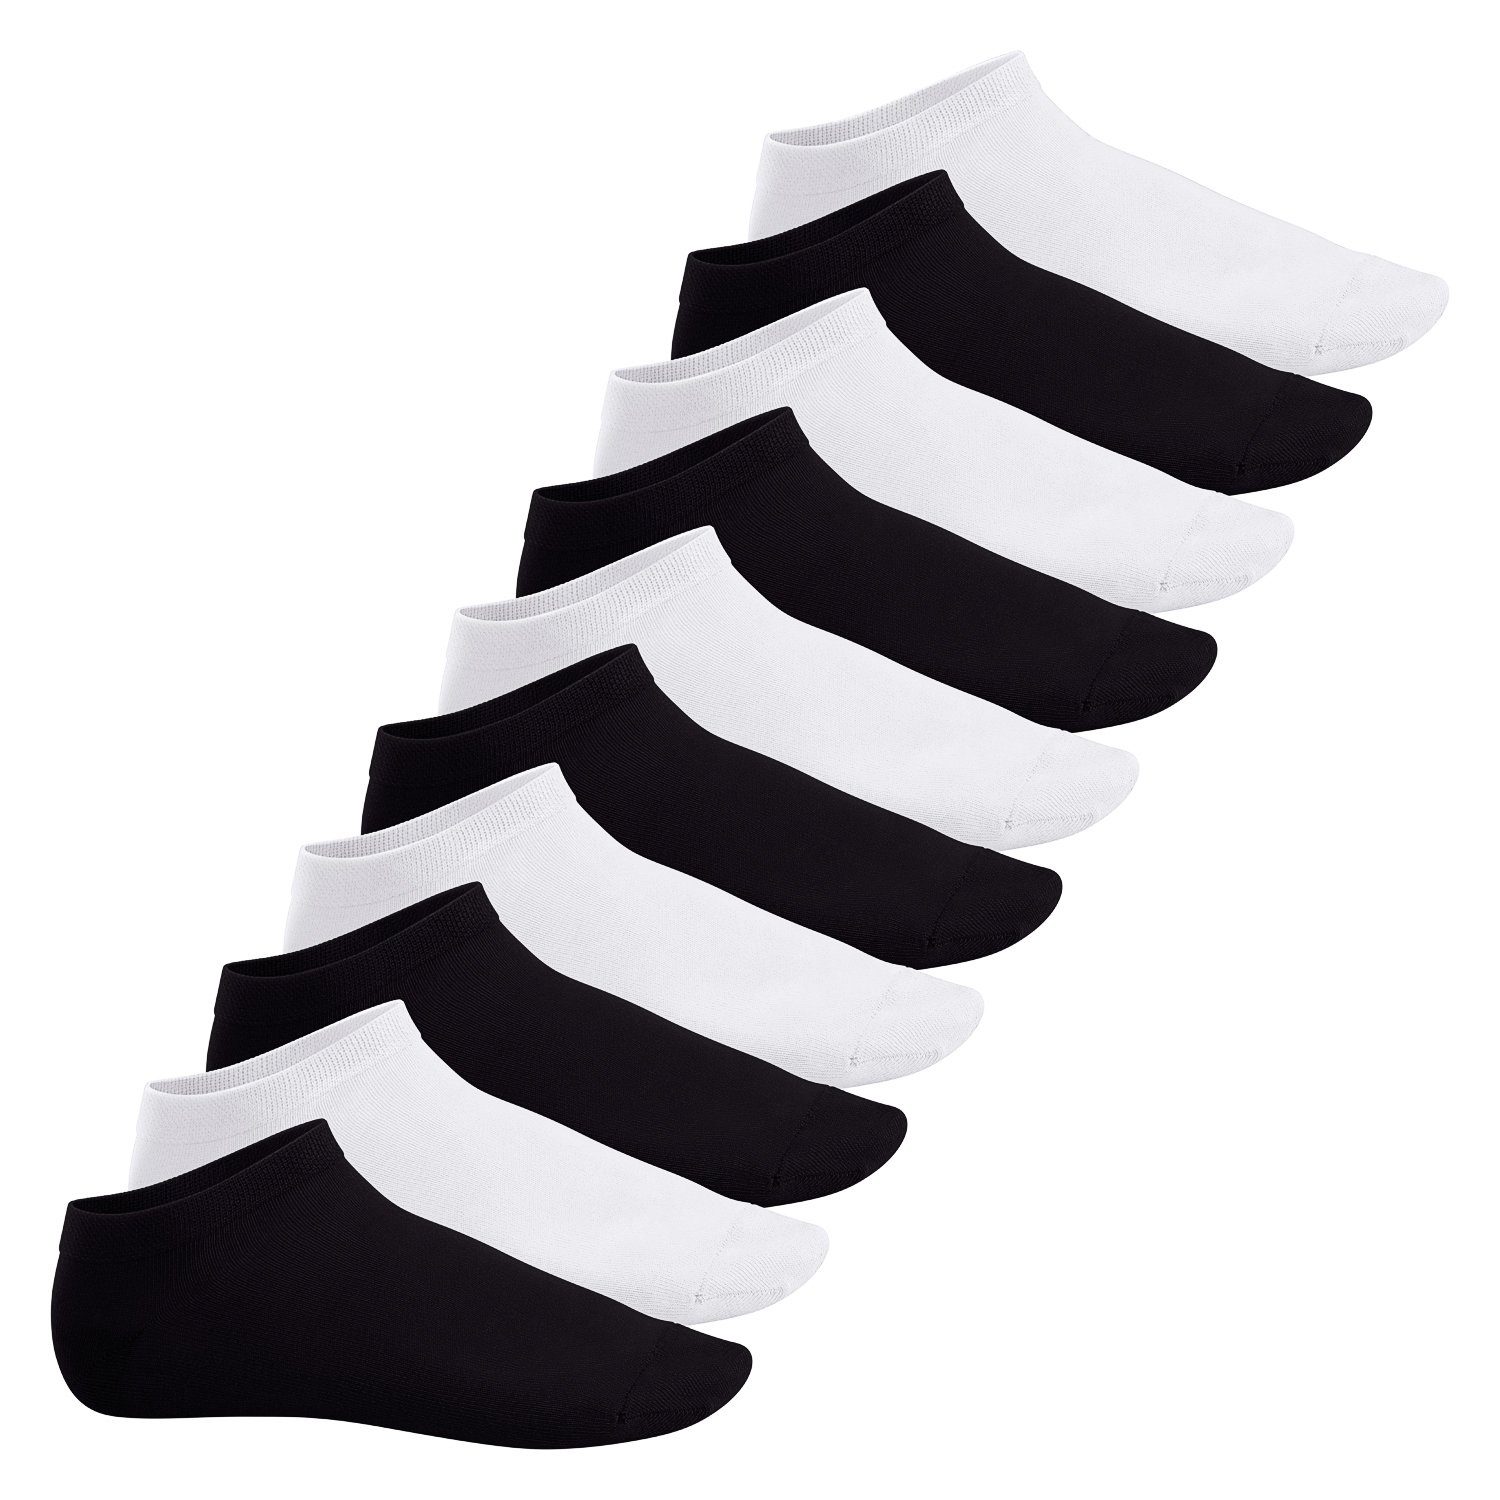 Footstar Füßlinge Sneak It! Damen & Herren Sneakersocken (10/20 Paar) kurze Socken Schwarz / Weiss Mix (5x Schwarz + 5x Weiss) | Füßlinge